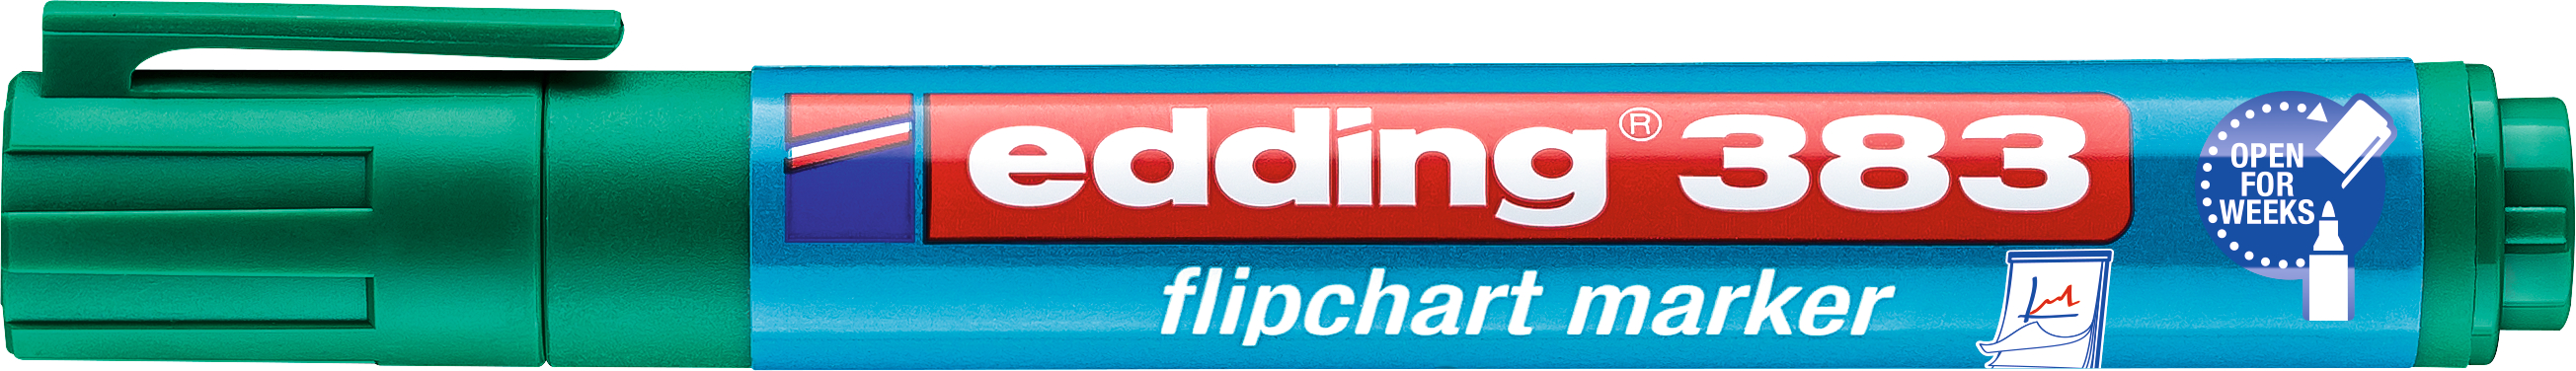 EDDING Flipchart Marker 383 1-5mm 383-4 vert